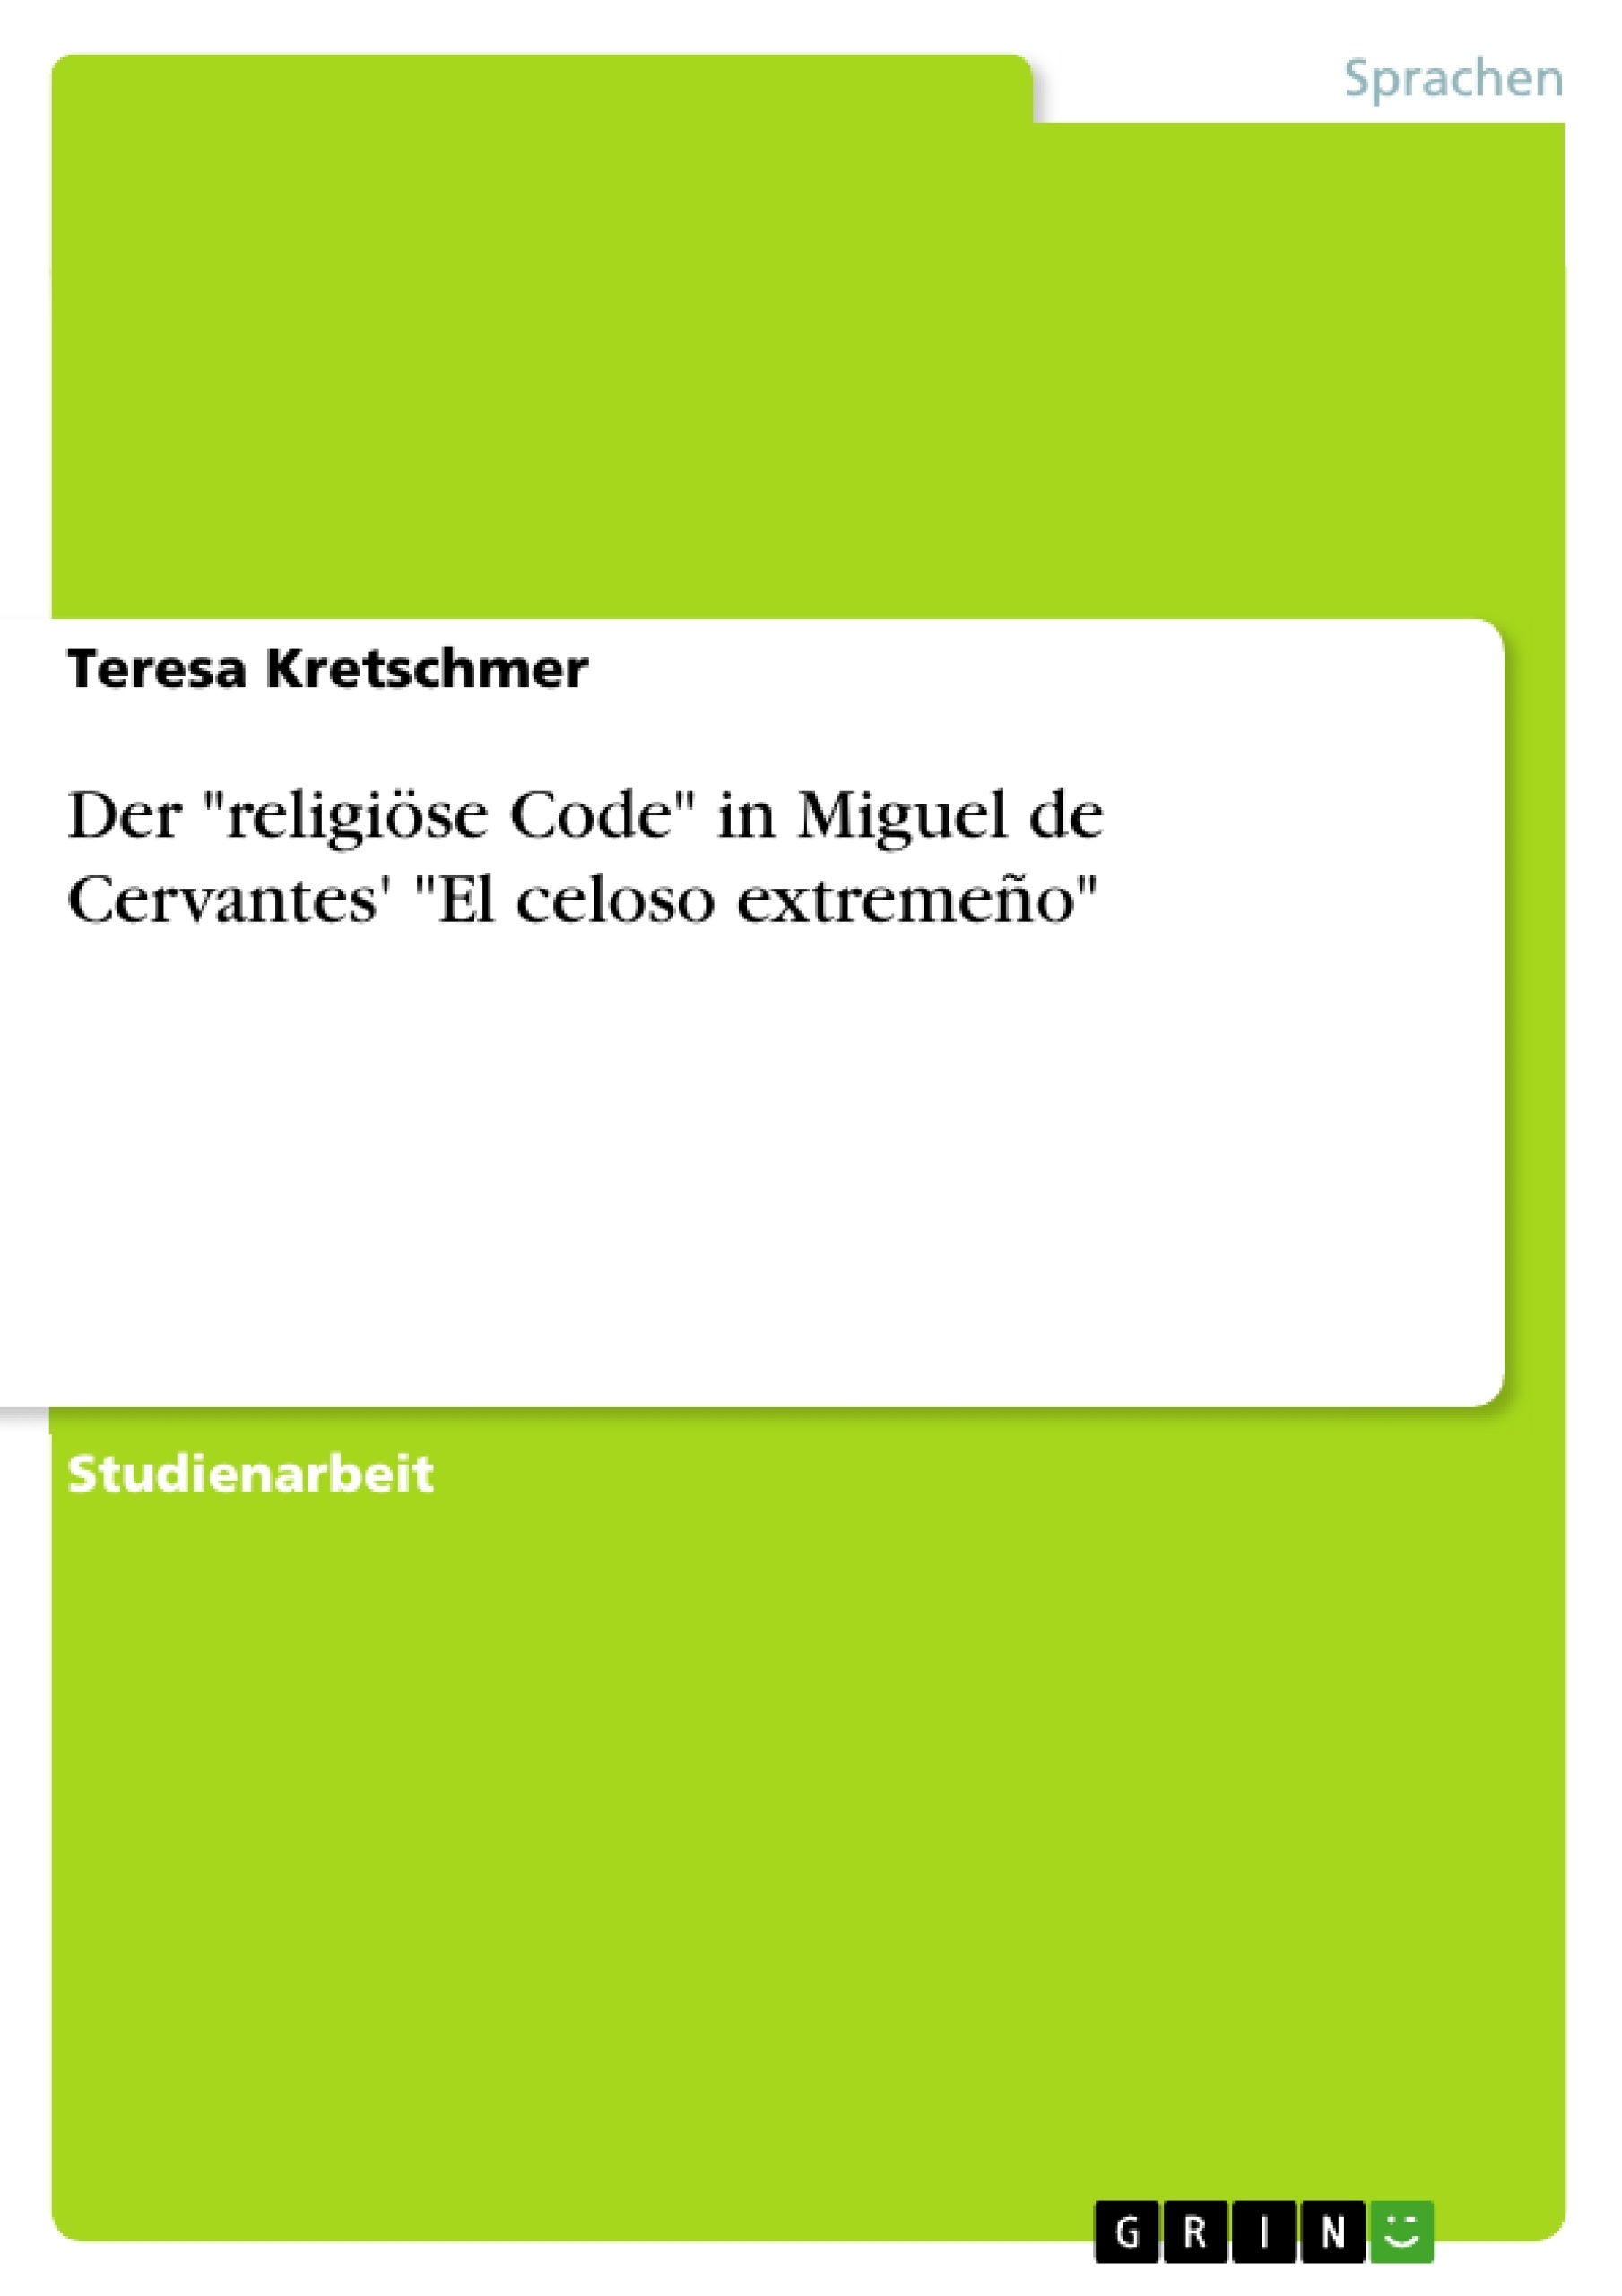 Titel: Der "religiöse Code" in Miguel de Cervantes' "El celoso extremeño"